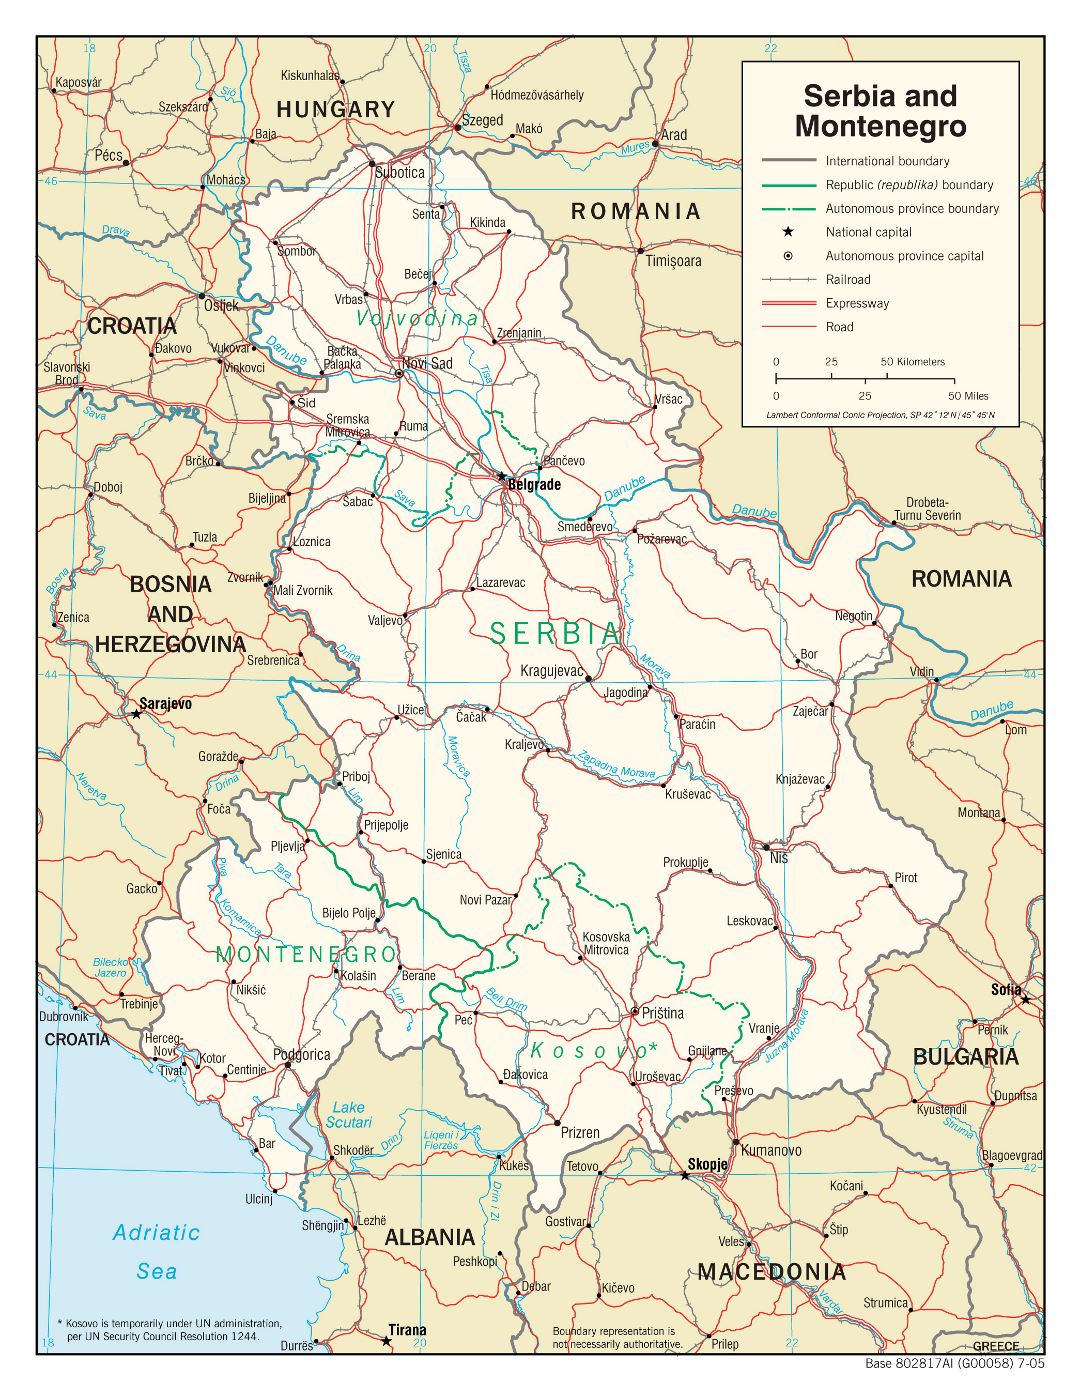 Grande detallado mapa política de Serbia y Montenegro con carreteras, ferrocarriles y principales ciudades - 2005